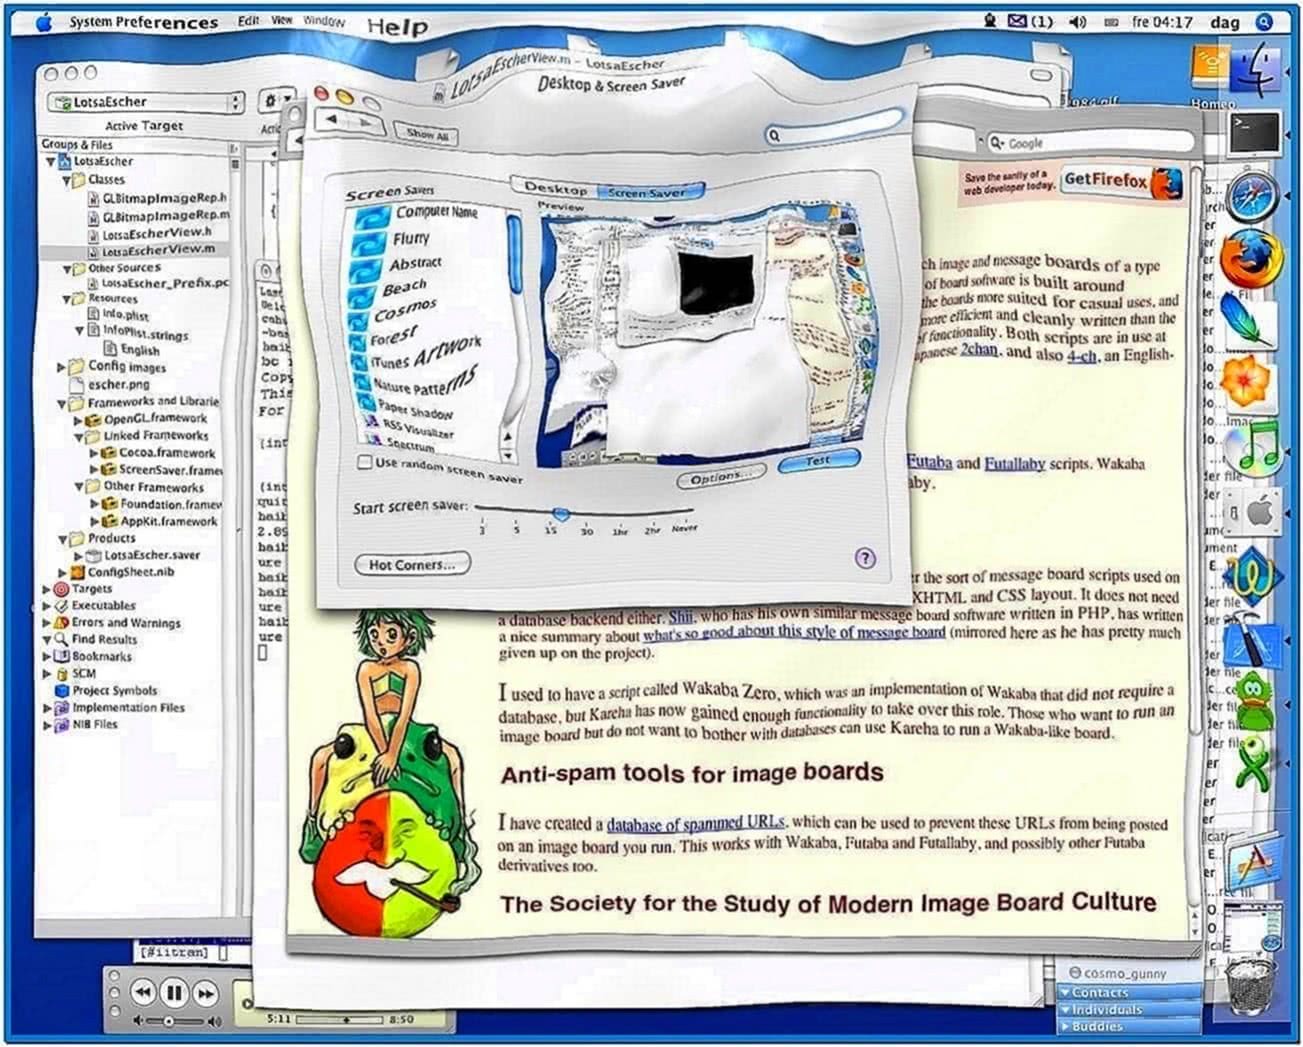 Lotsa Water Screensaver Windows XP